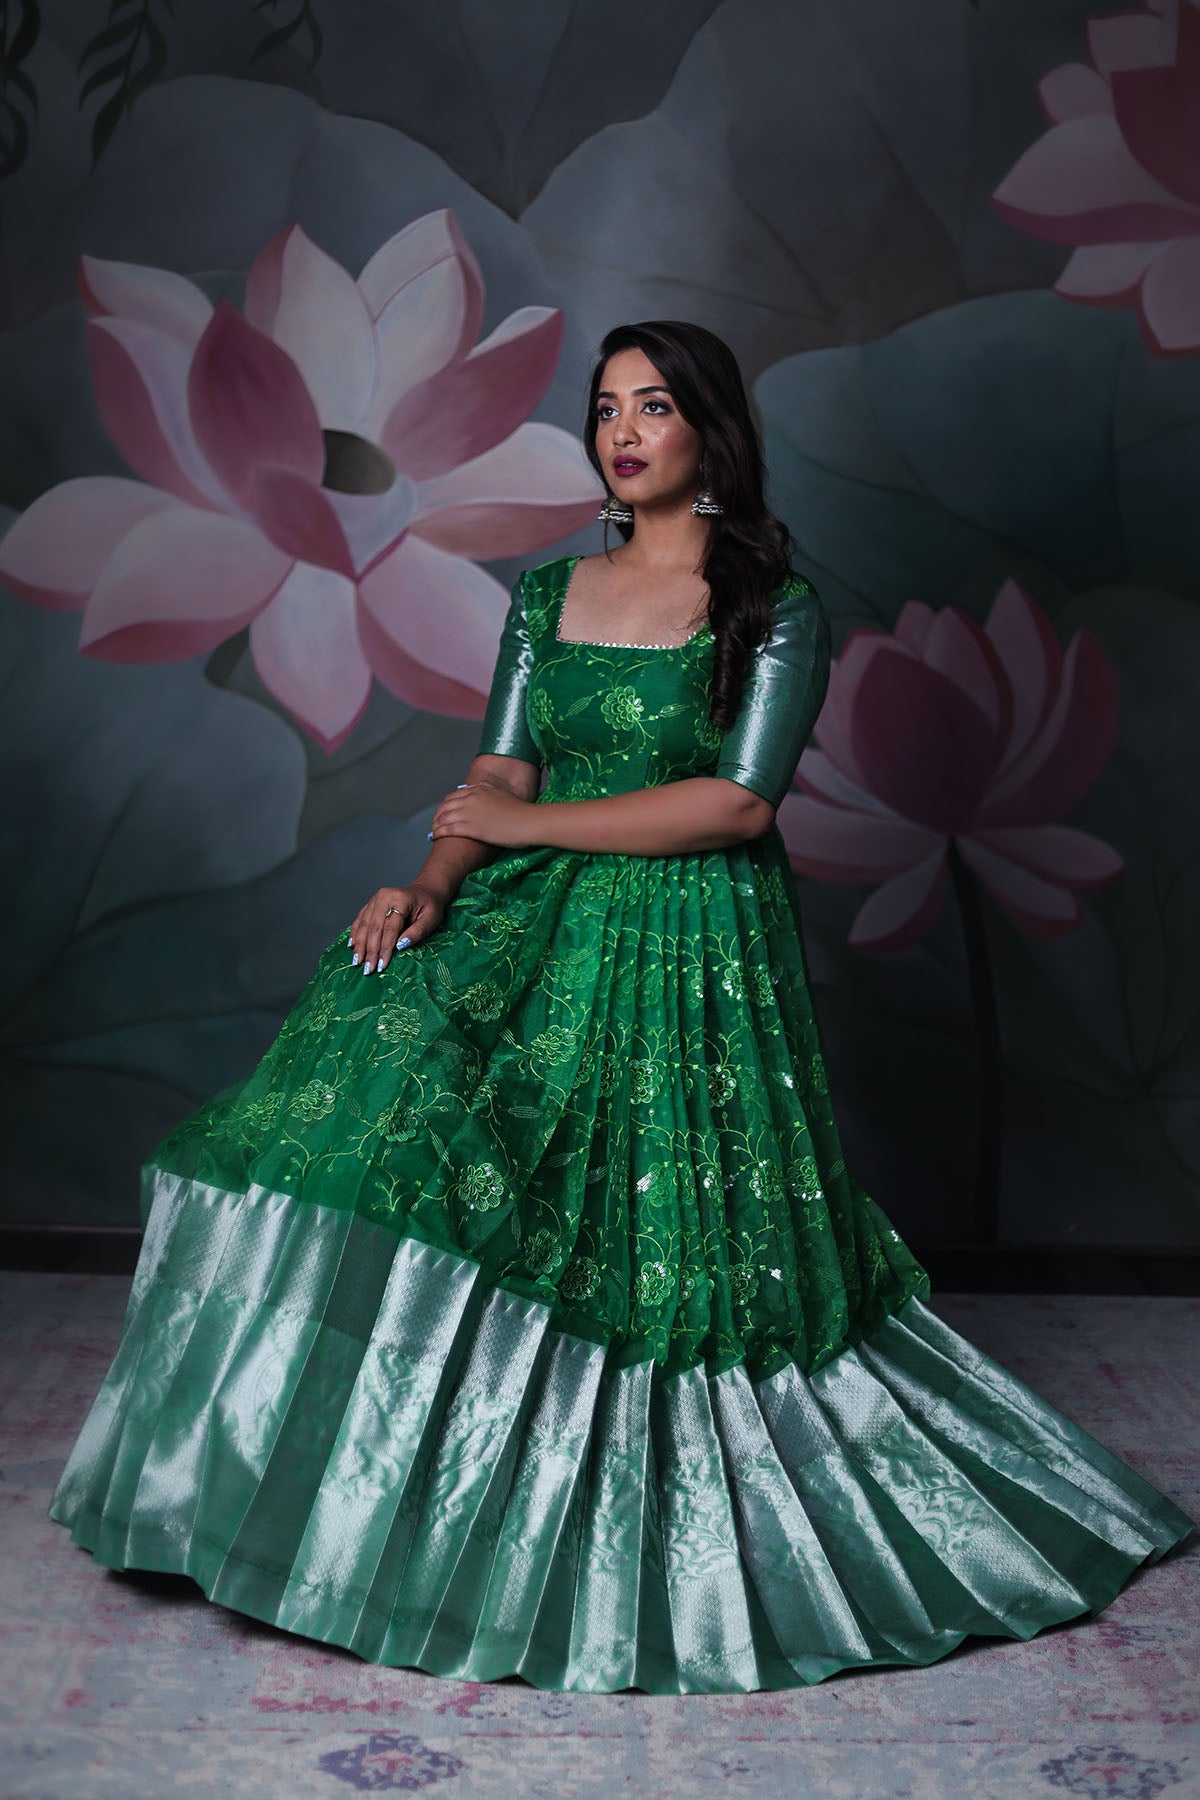 Anarkali Suits - Buy Latest Designer Anarkali Dress Online | Kreeva